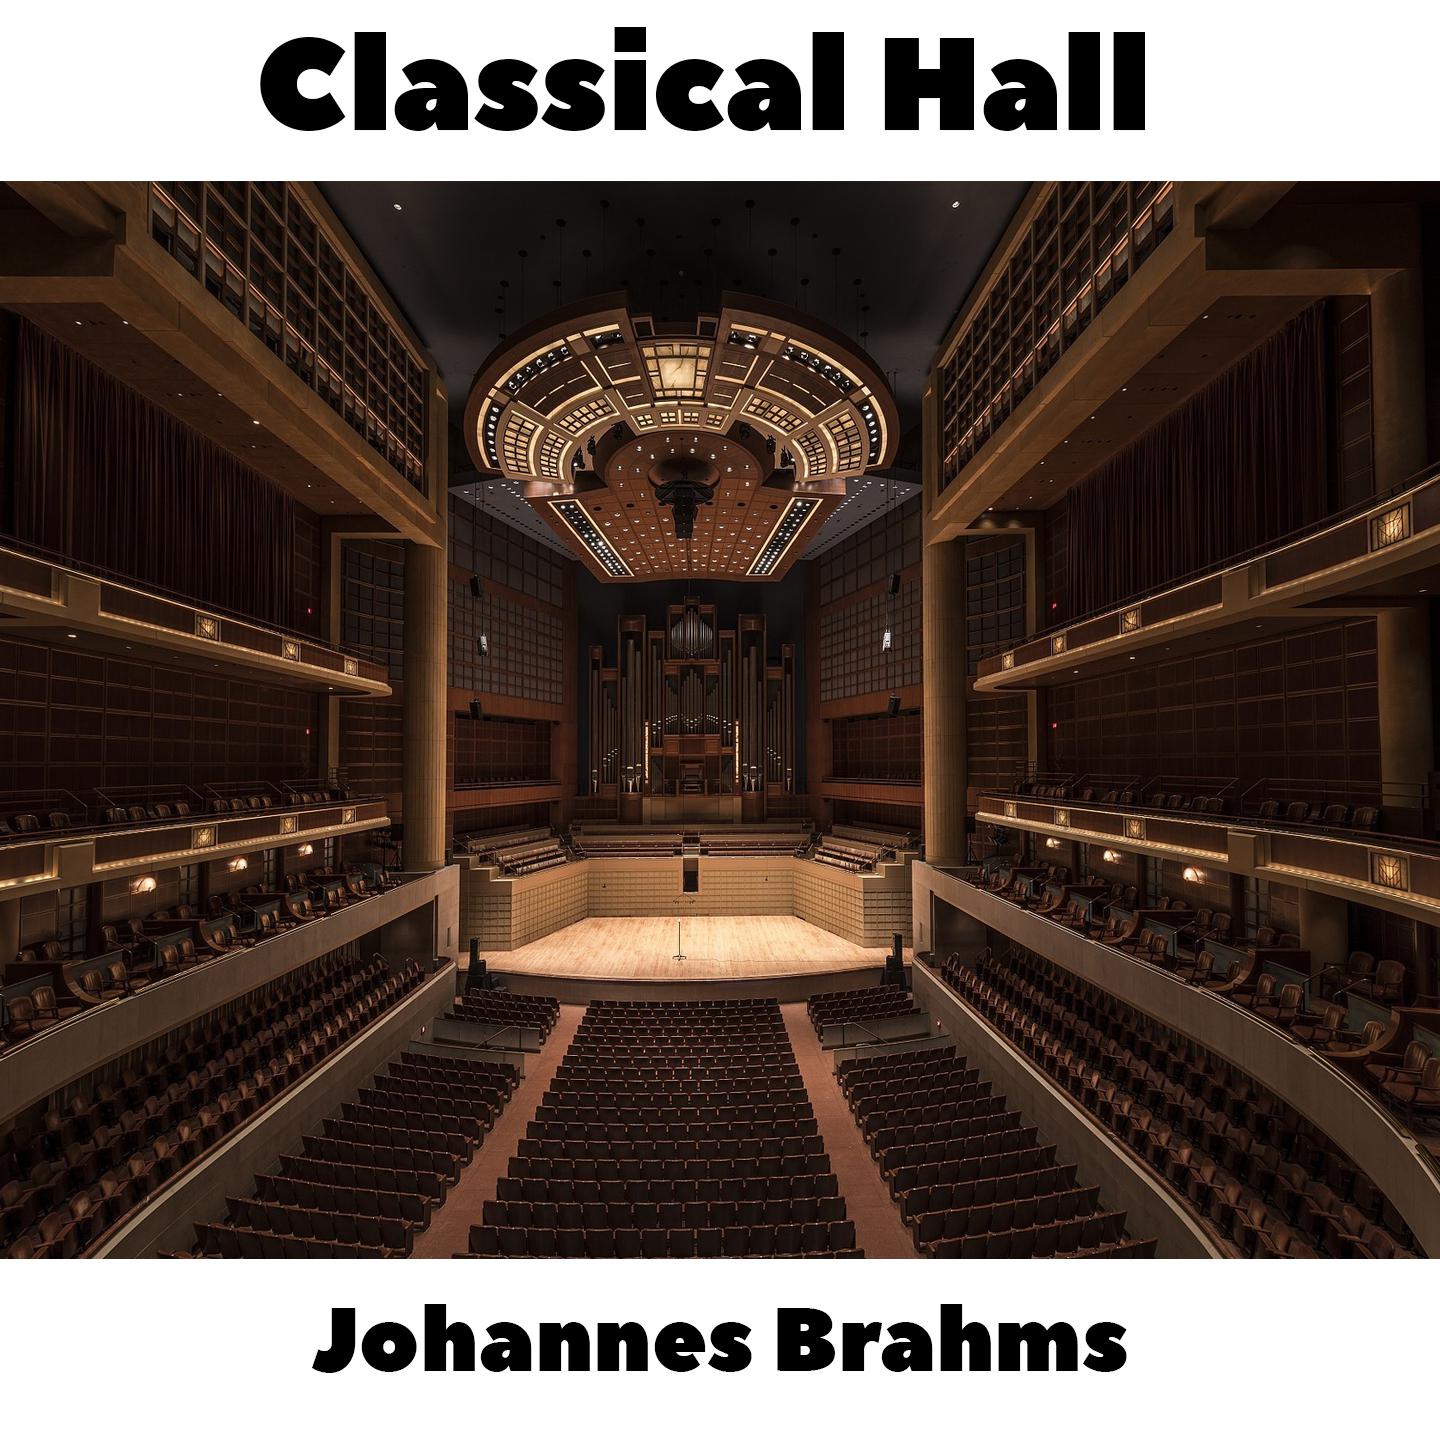 Johannes Brahms -  16 Waltzes, Op.39 - No.13 in B